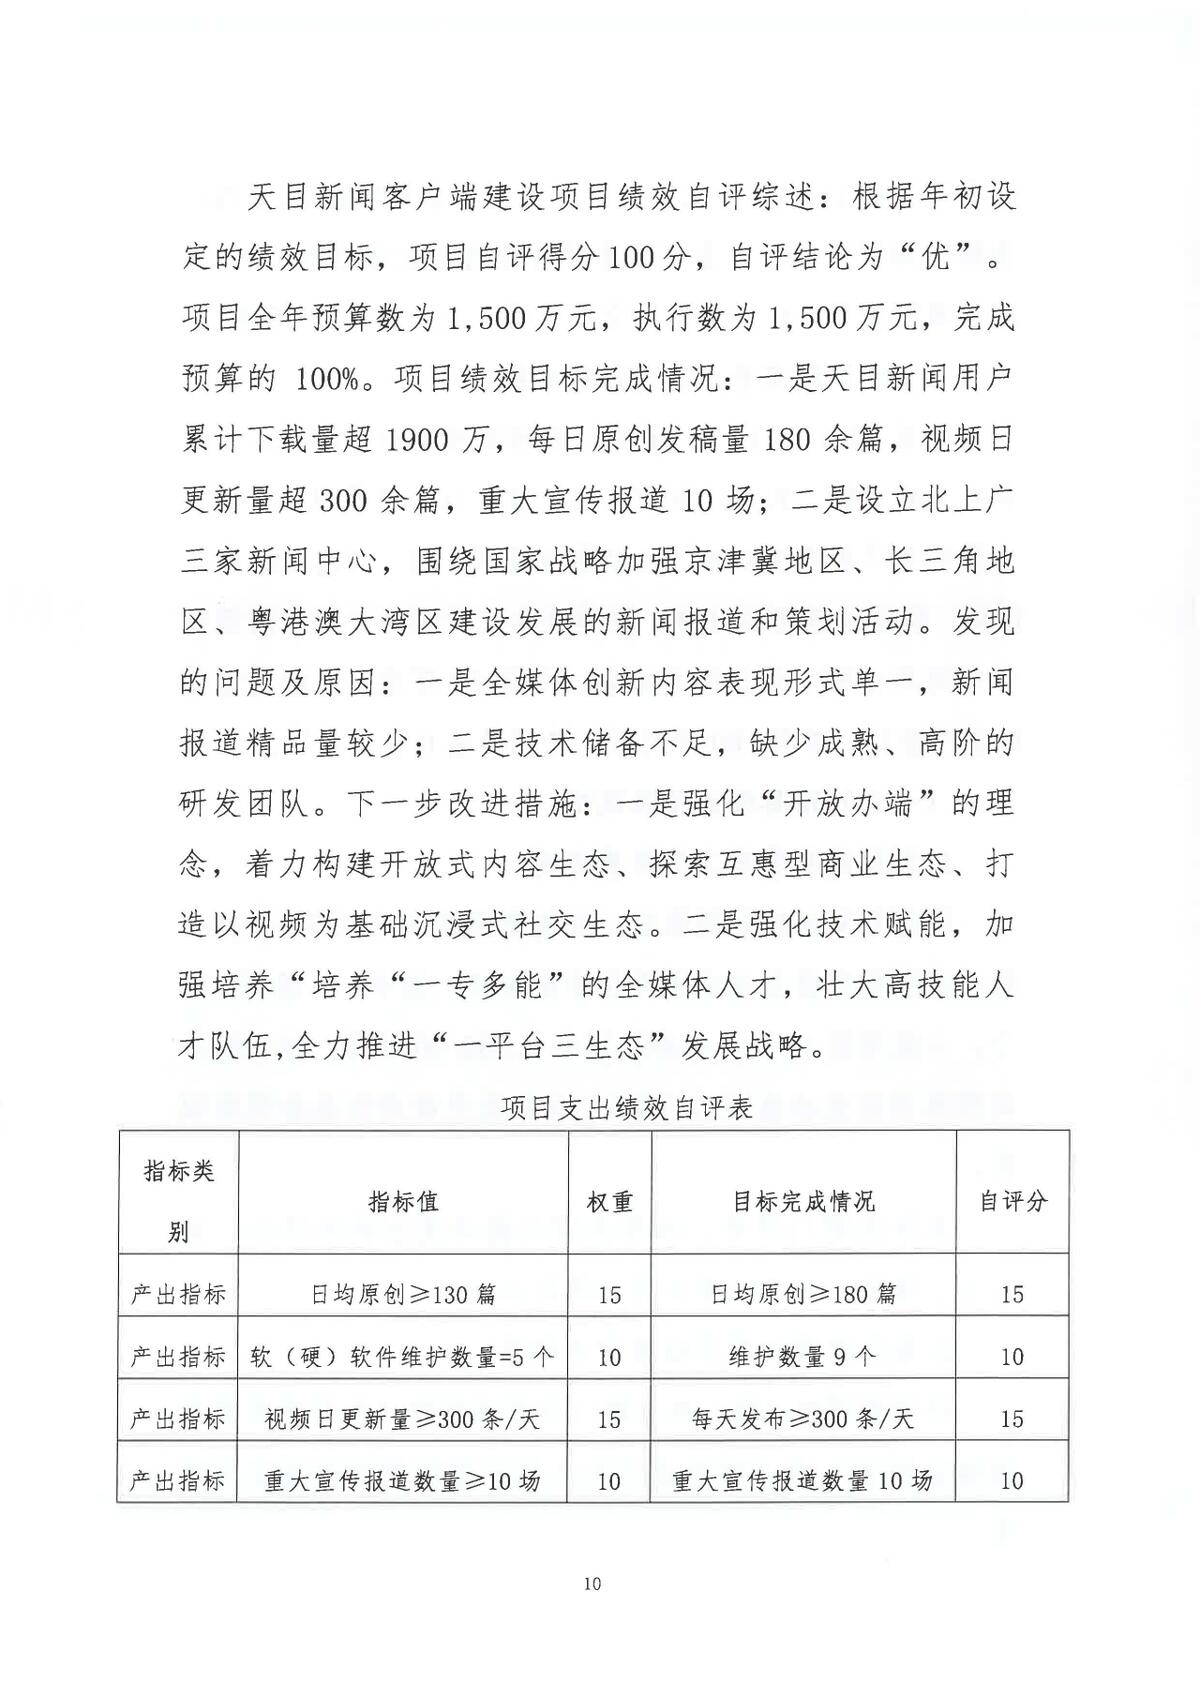 浙江日报报业集团2021年度部门决算_页面_12.jpg